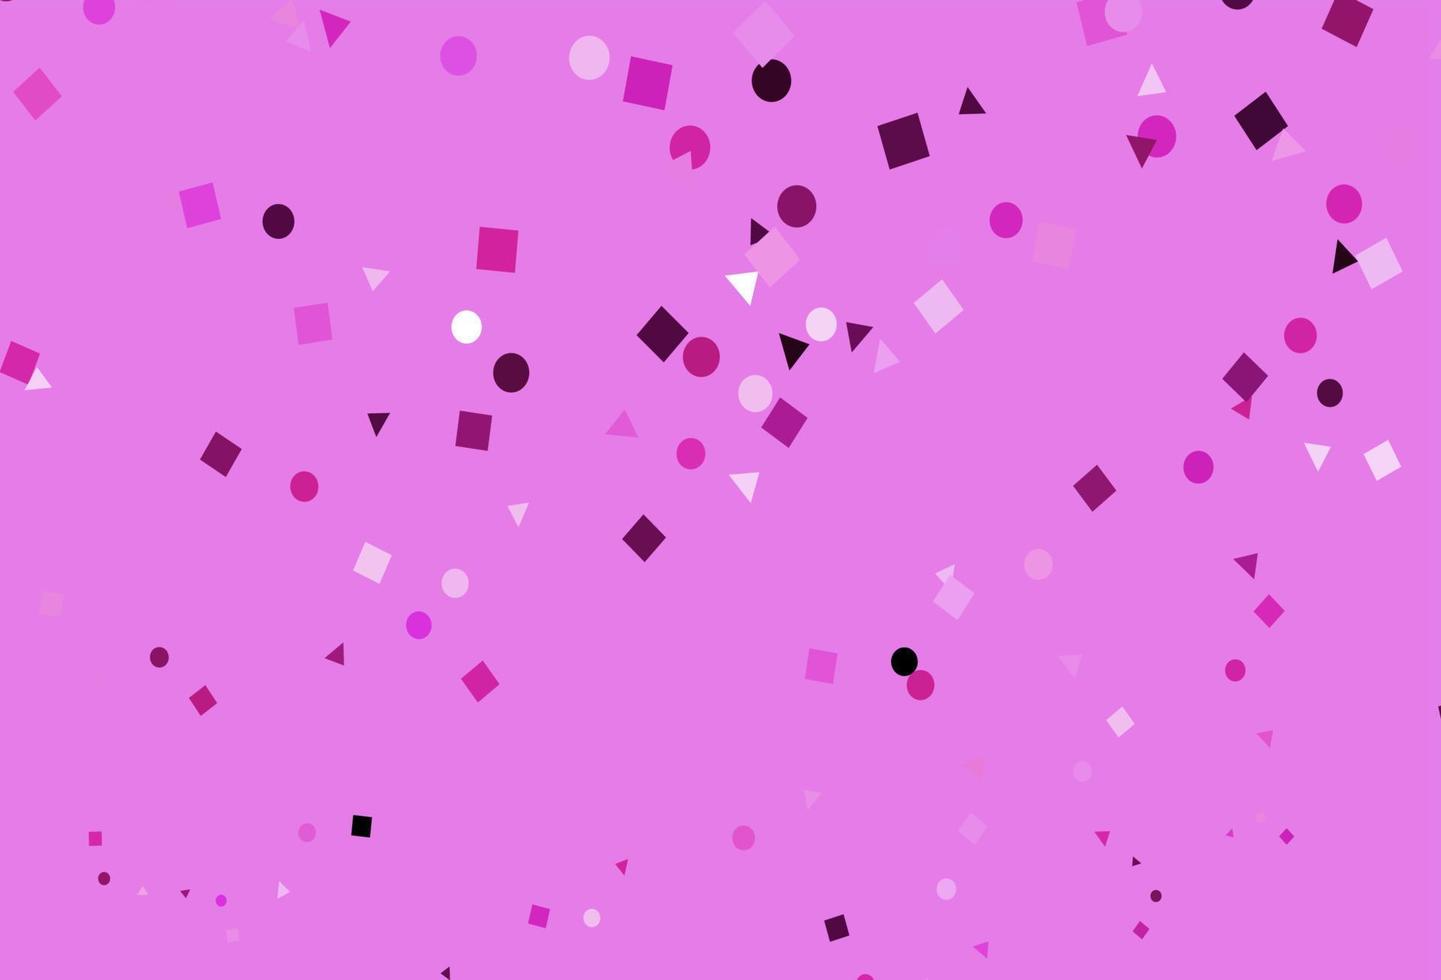 padrão de vetor rosa claro em estilo poligonal com círculos.